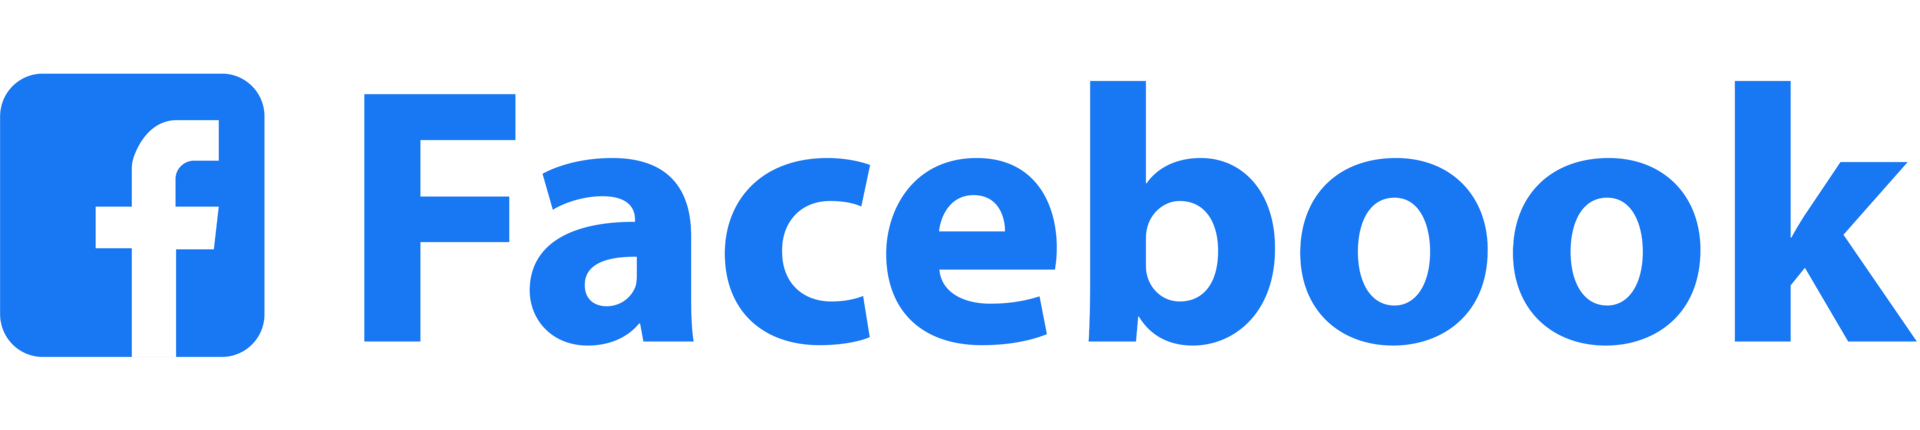 Facebook logotipos, sites, e formulários popular conectados social meios de comunicação png